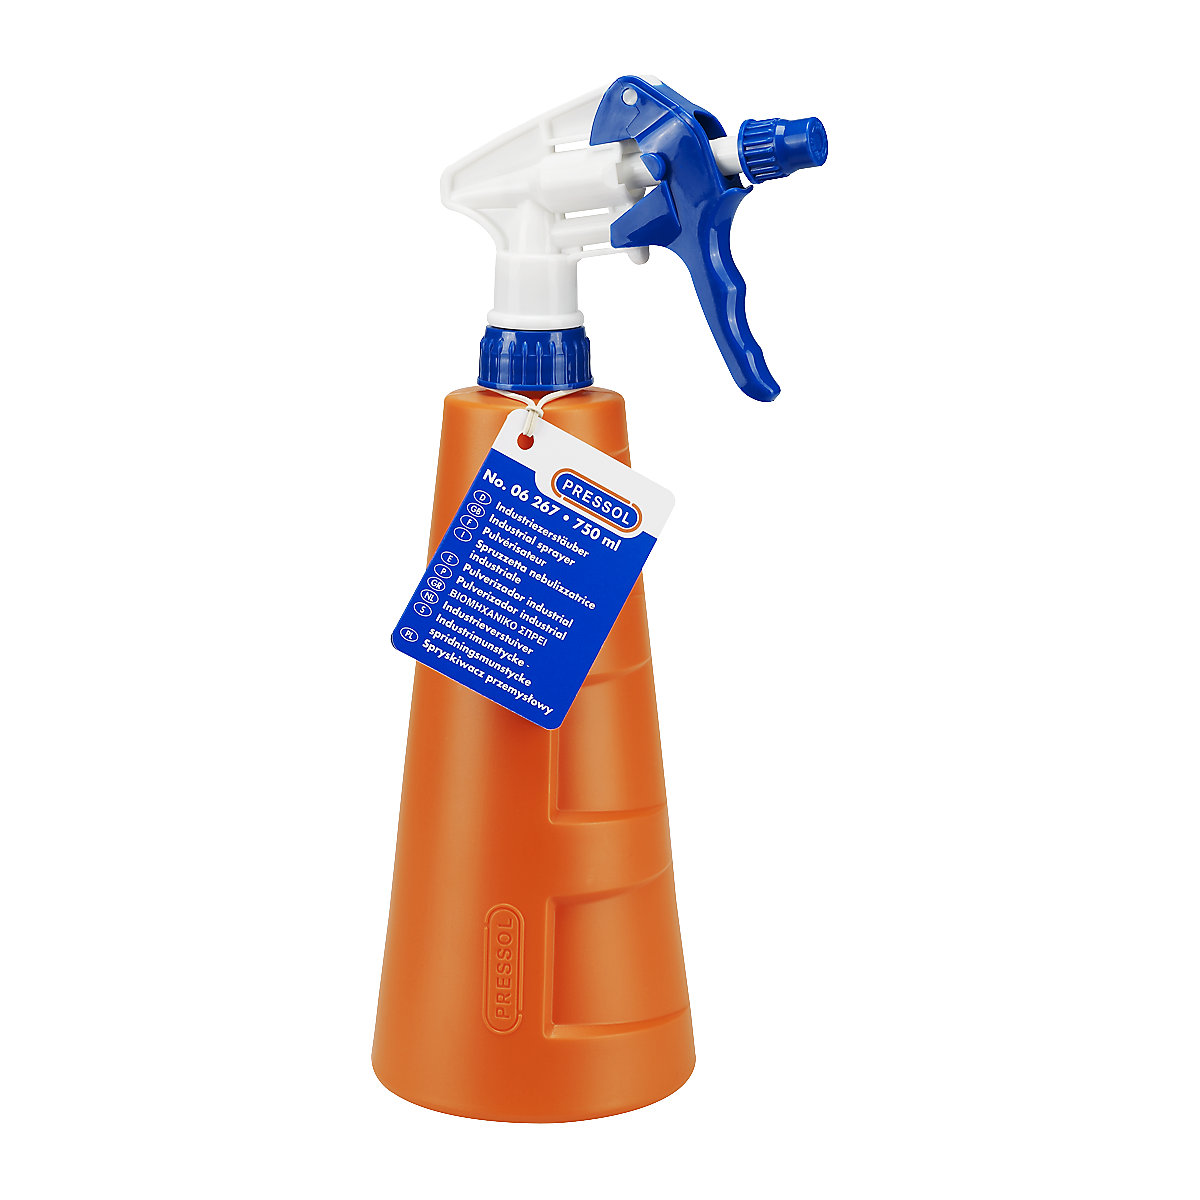 PRESSOL – Industrial spray container